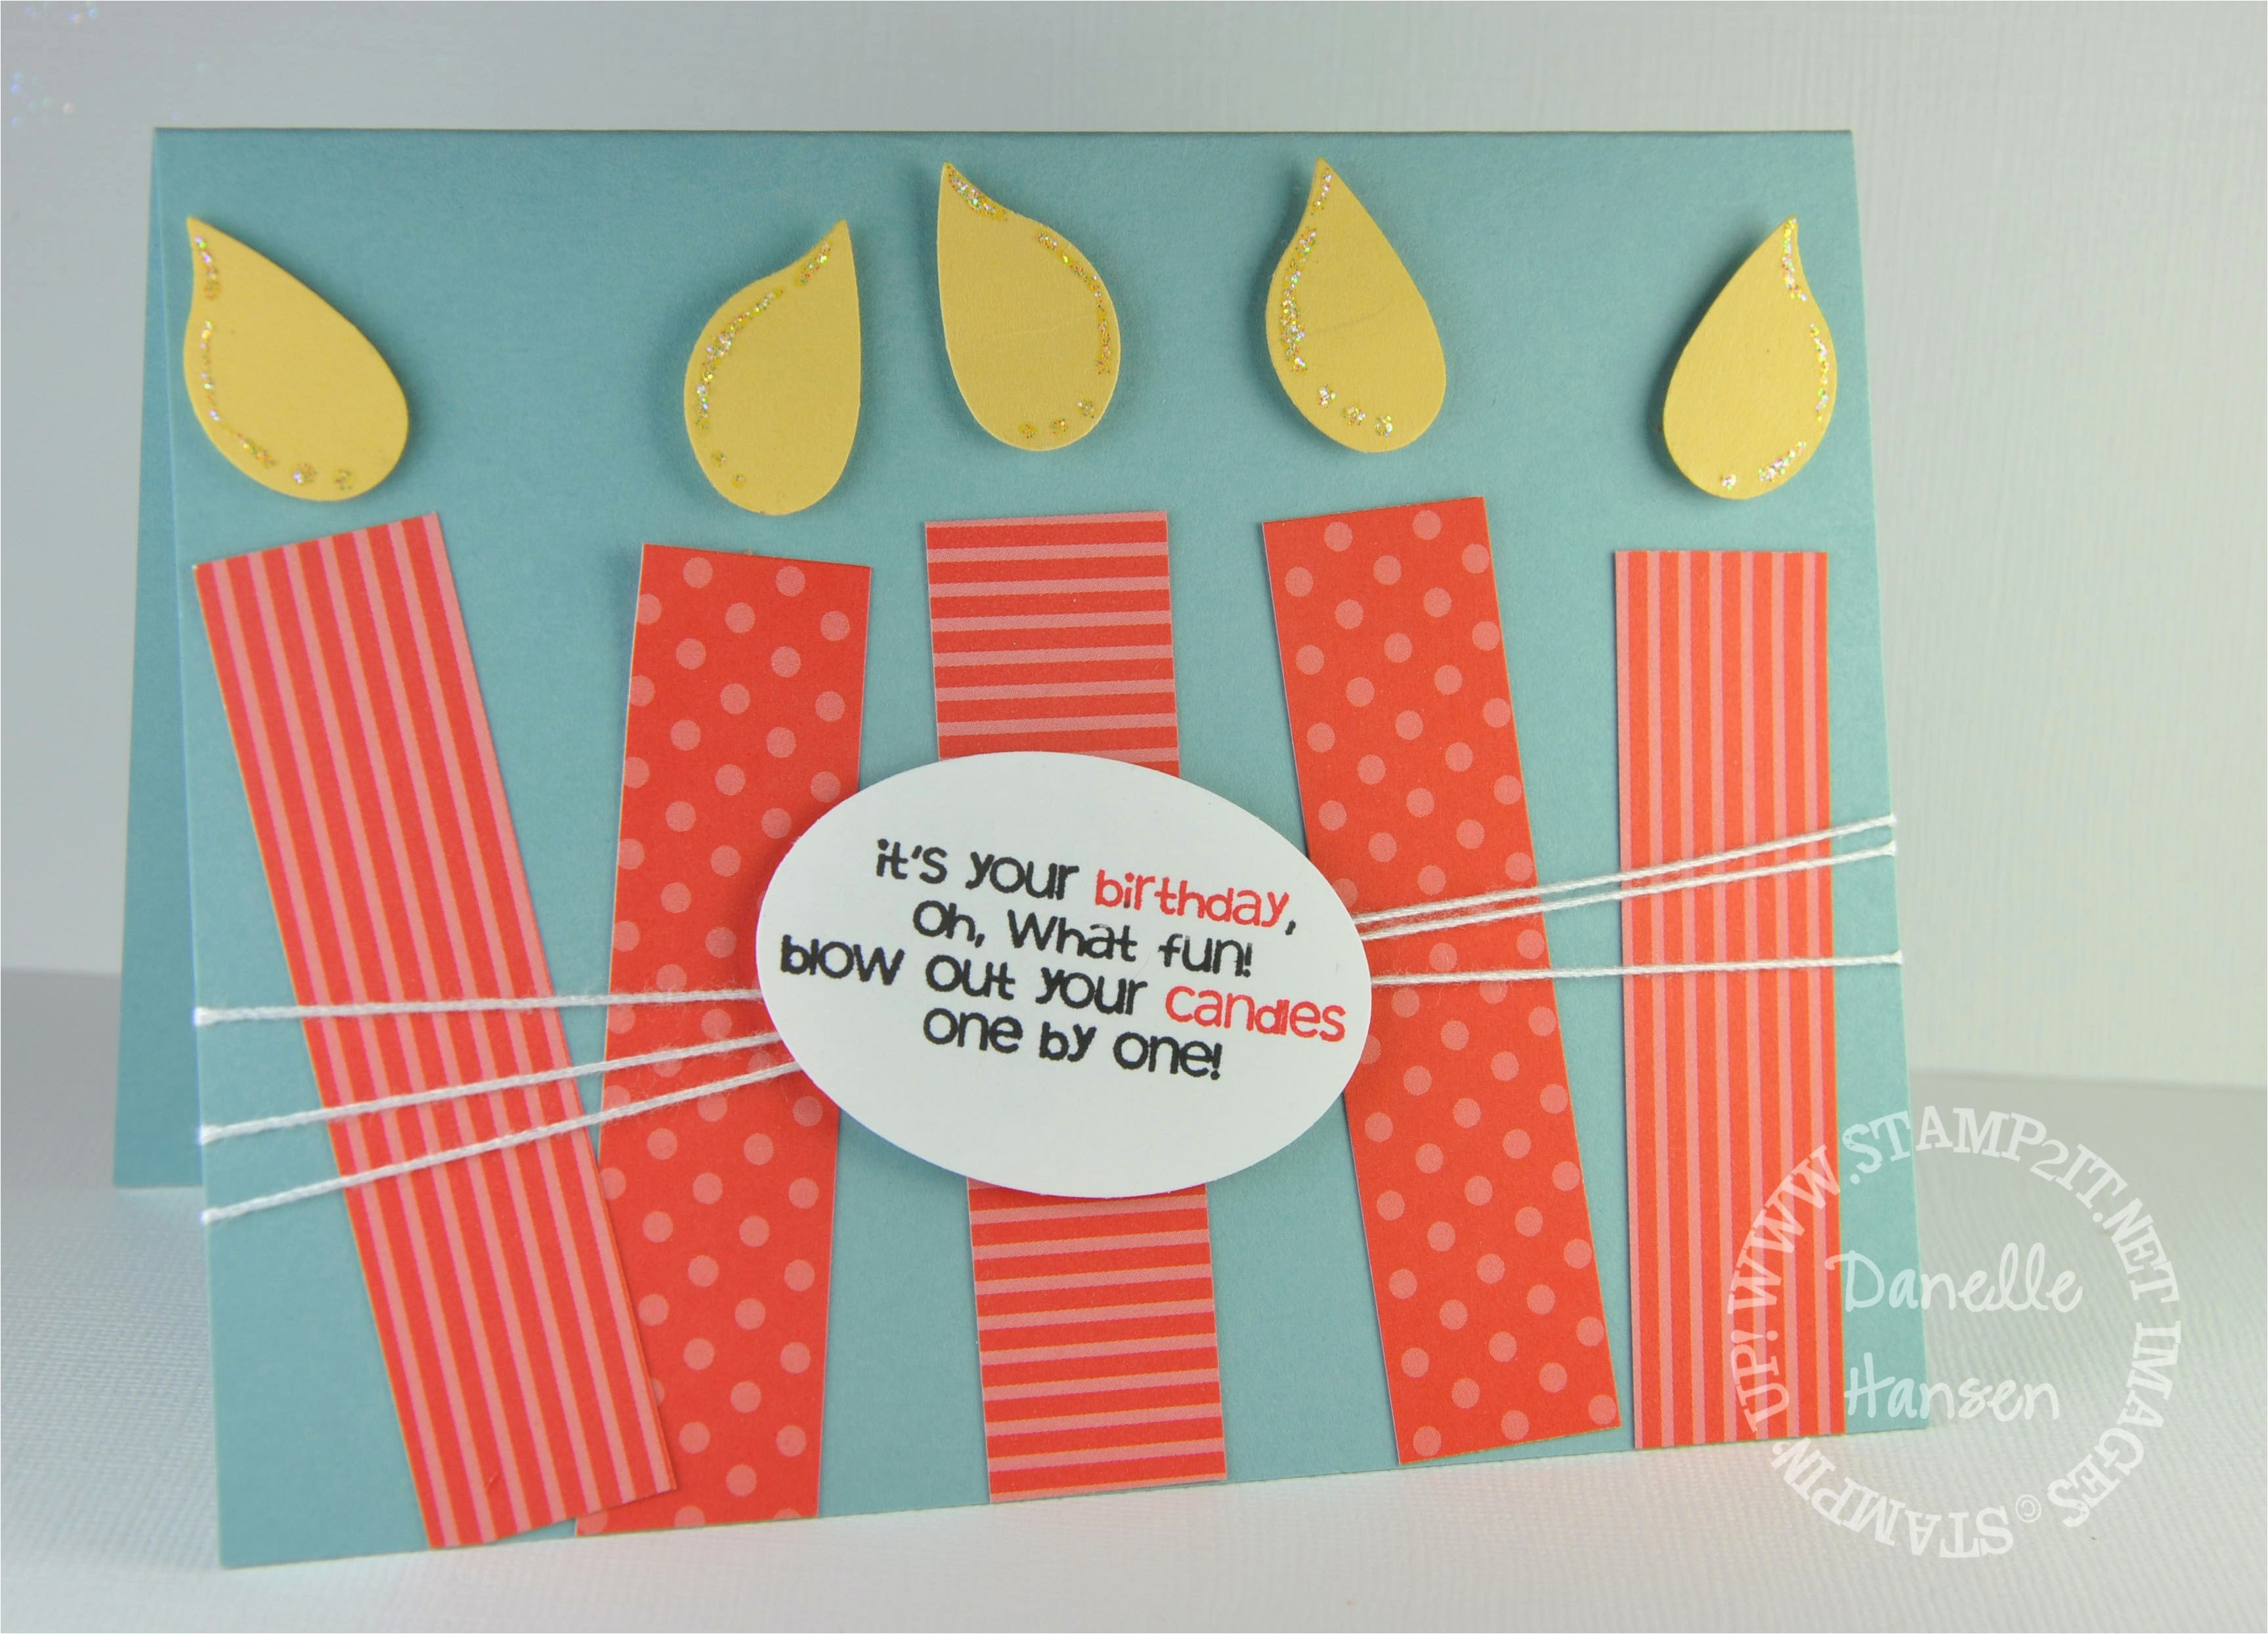 Handmade Birthday Card Idea Diy Birthday Cards For Husband Creative Handmade Birthday Card Ideas